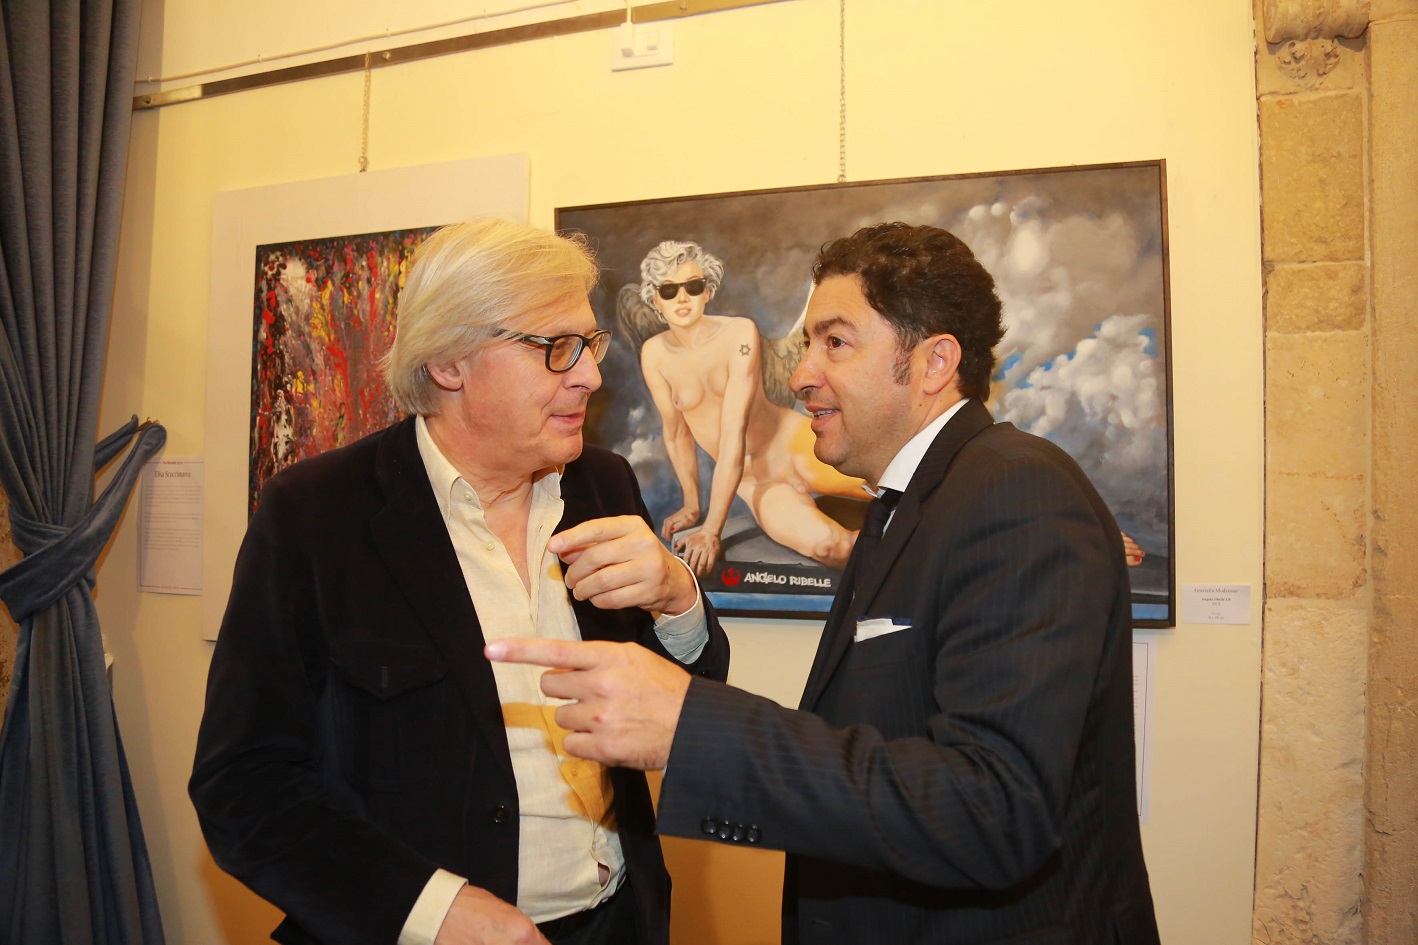 Foto 5 - Grande successo per la mostra Pro Biennale di Vittorio Sgarbi inaugurata a Venezia con tanti amici vip e talentuosi artisti internazionali